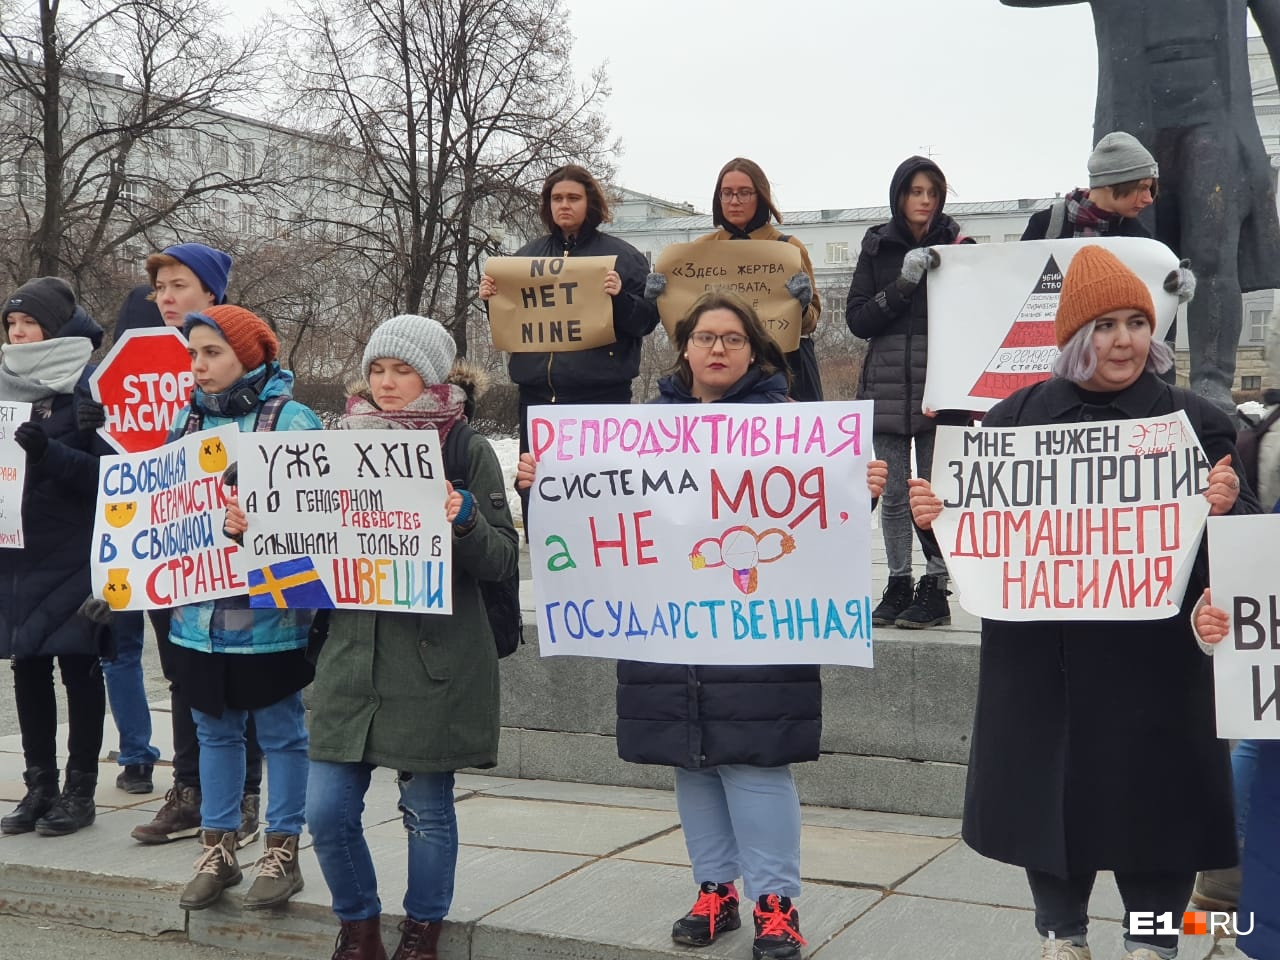 «Сегодня бьет, завтра убьет»: феминистки вышли на митинг в Екатеринбурге, разглядываем их плакаты